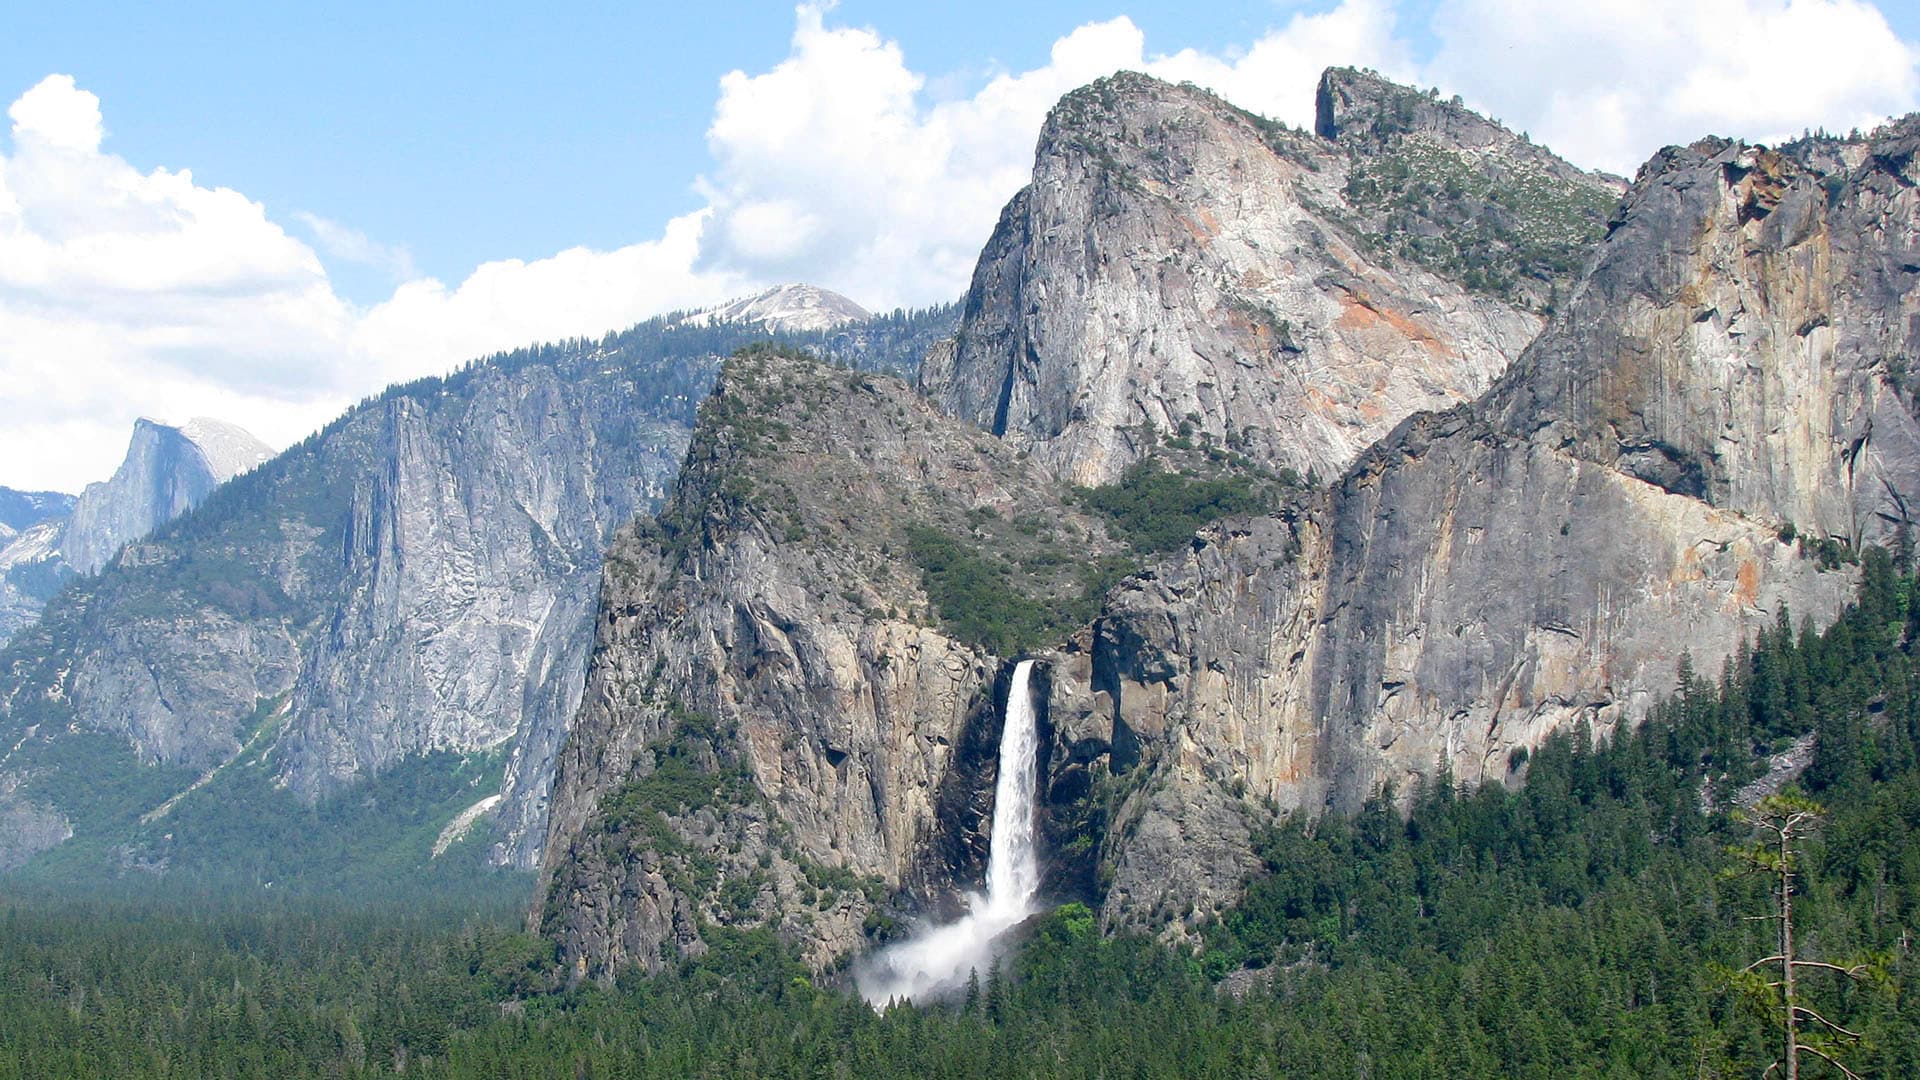 【最も人気があります】 Yosemite 画像 最優秀作品賞 2020